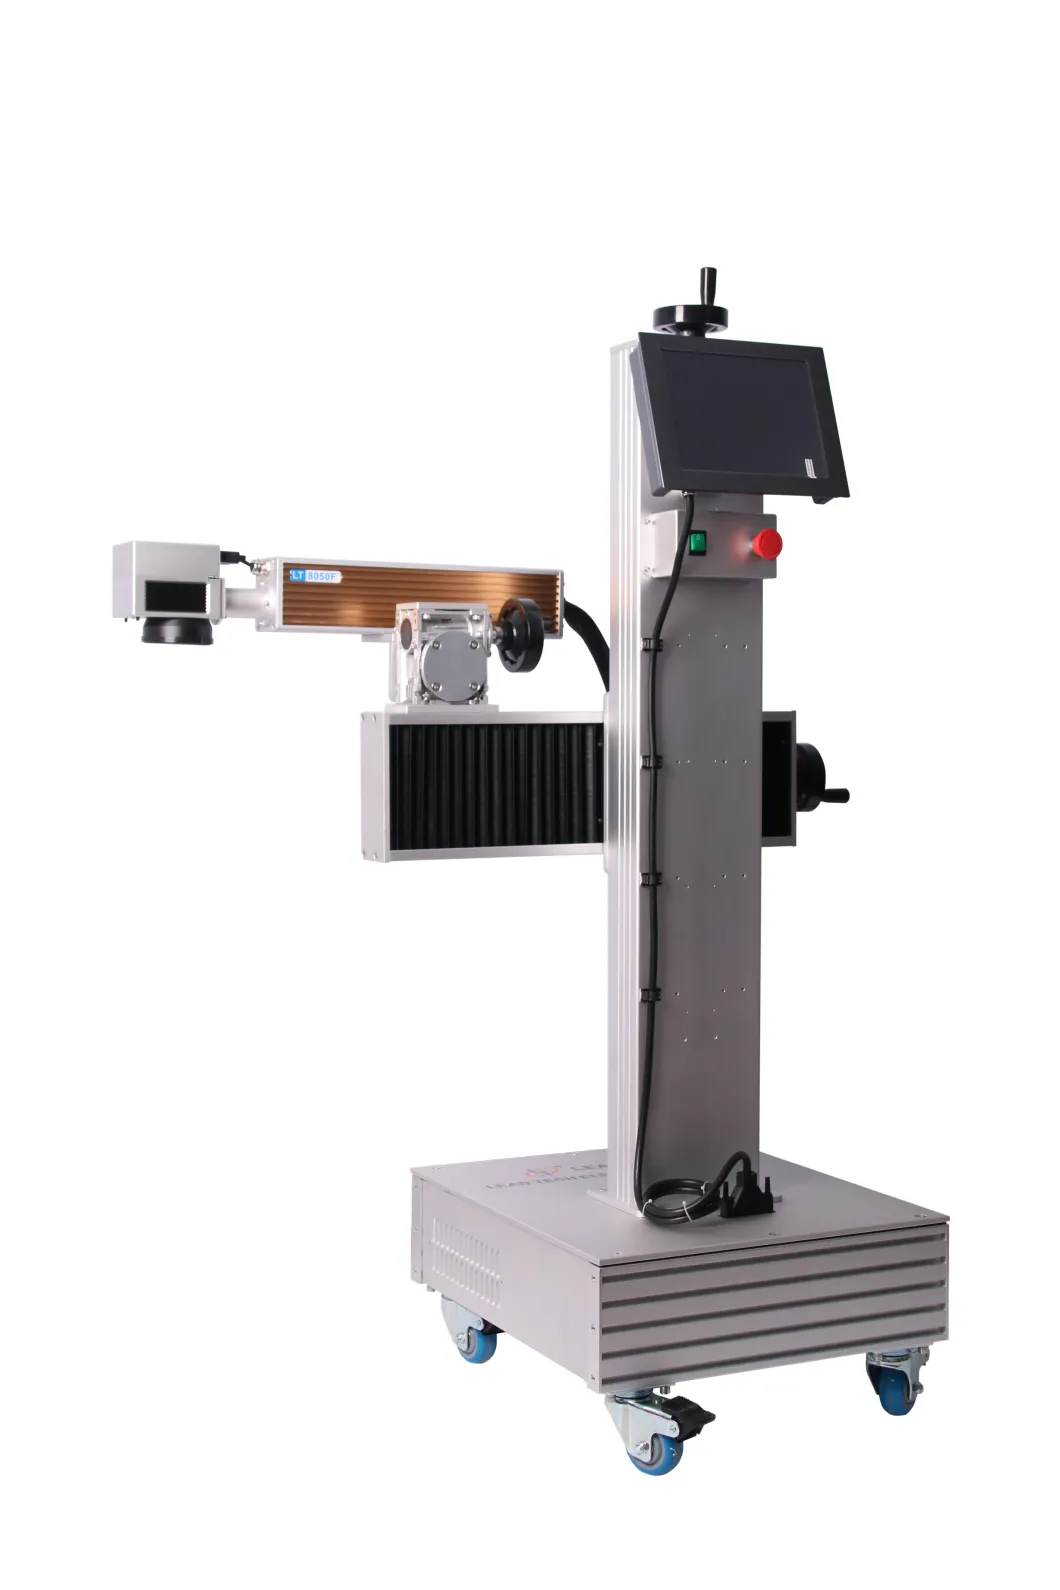 Lt8020f/Lt8030f/Lt8050f 30W Fiber Laser Engraver Printer for Metal or Non-Metal Marking